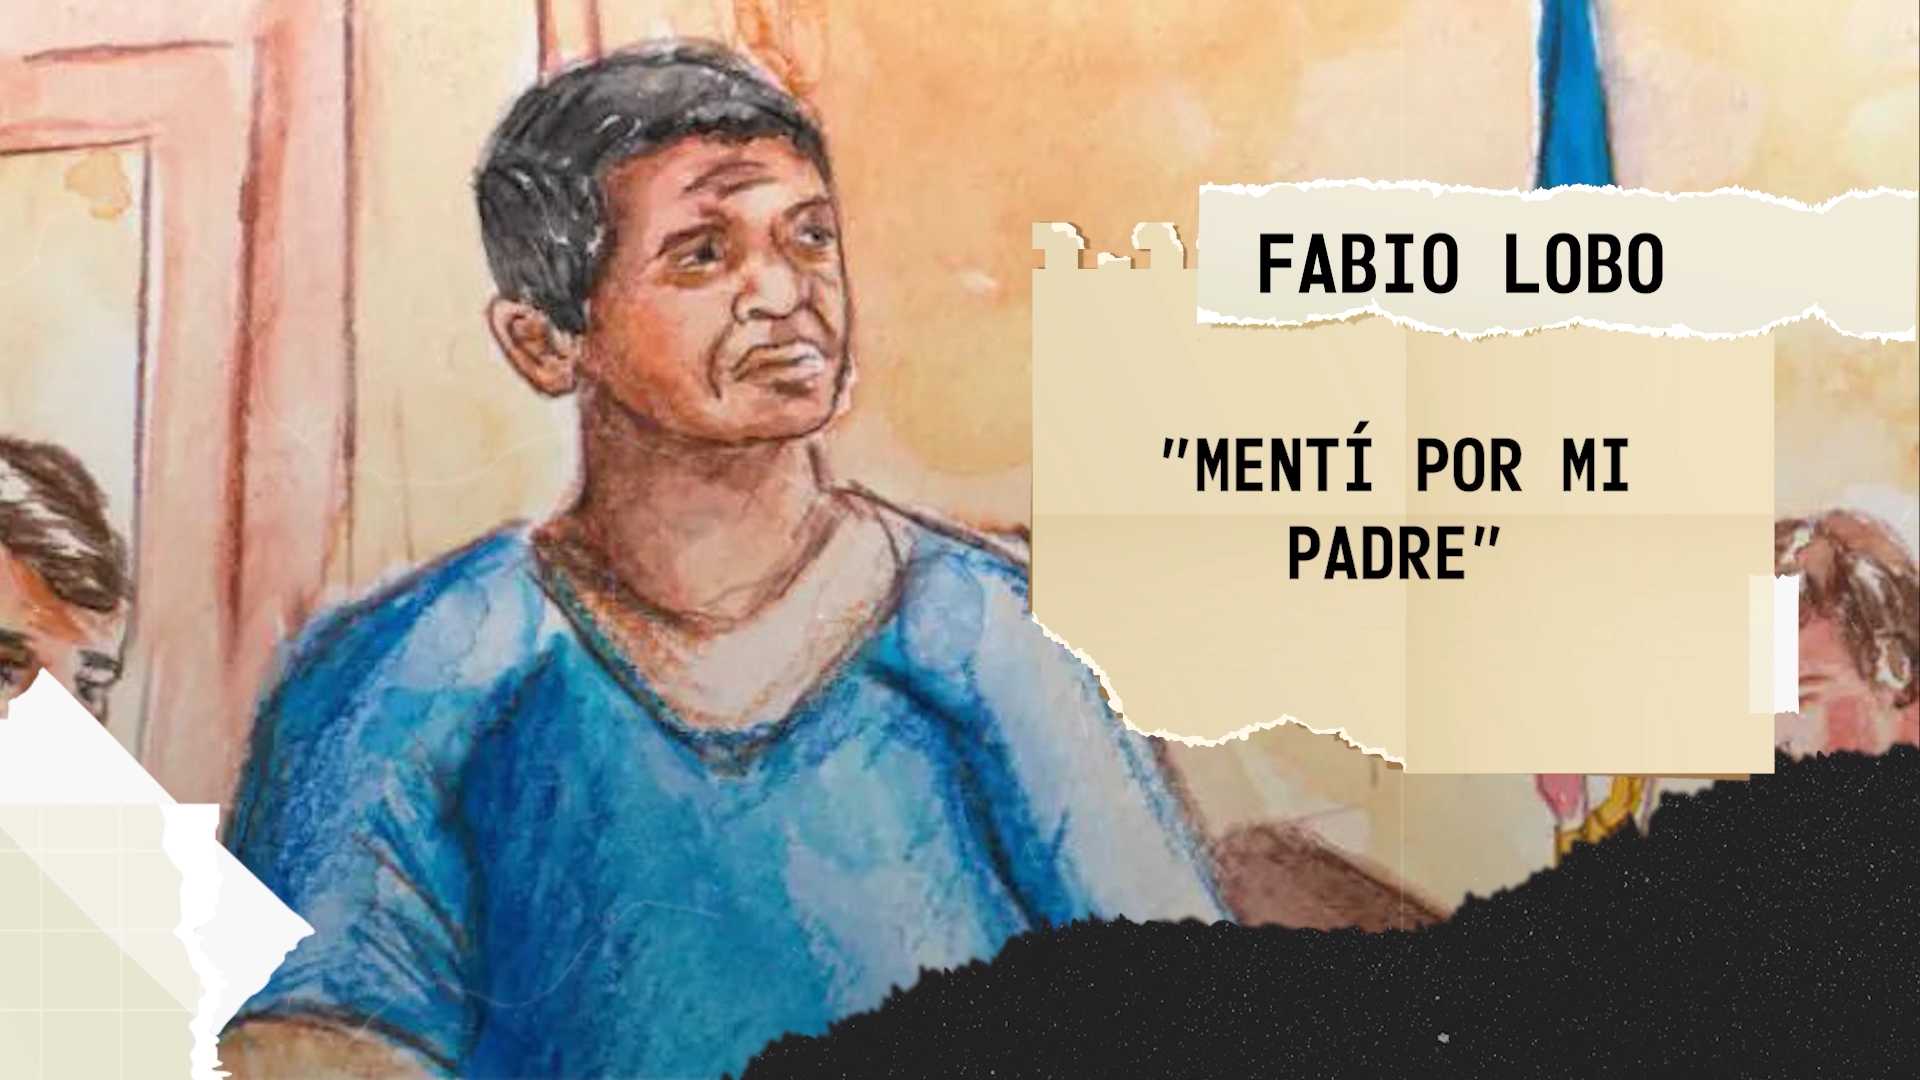 Fabio Lobo hunde a su padre Pepe Lobo y testifica que sobornó a JOH en dos ocasiones